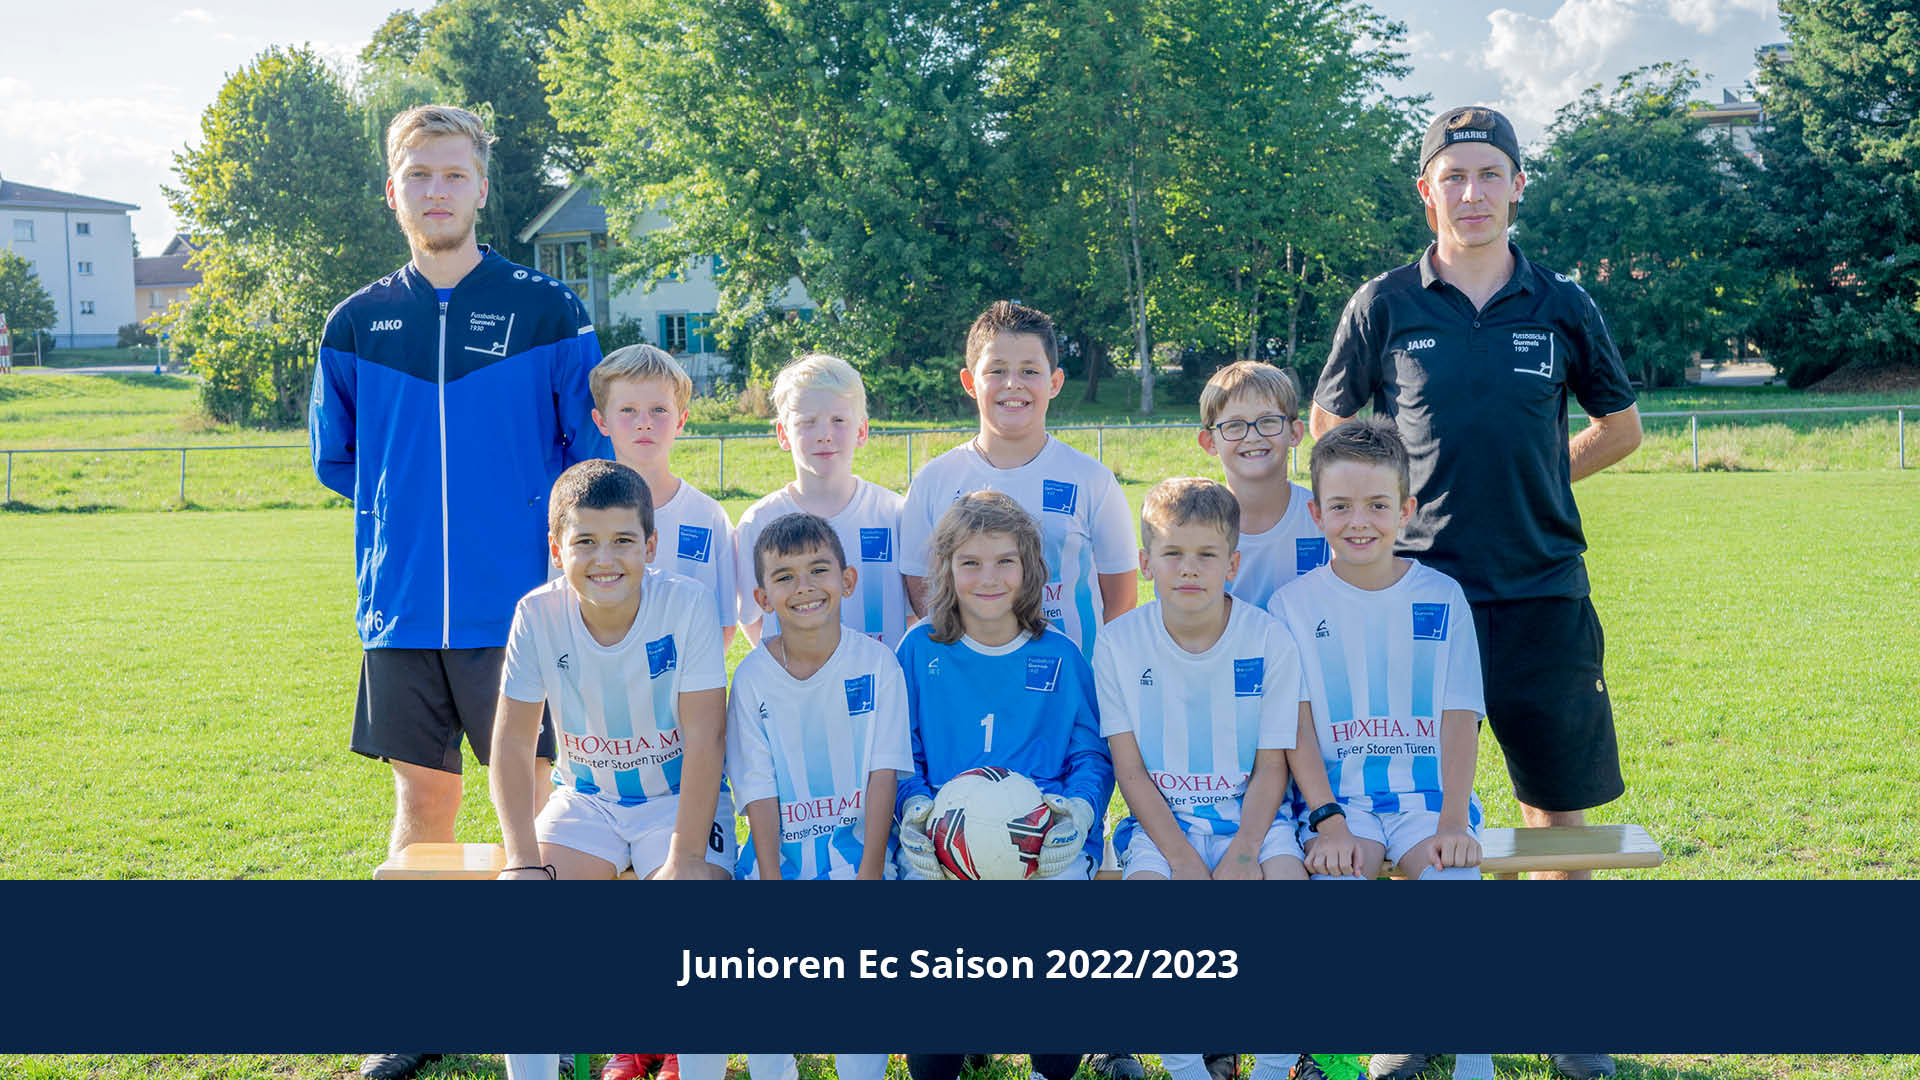 FC Gurmels Junioren Ec Saison 2022/23